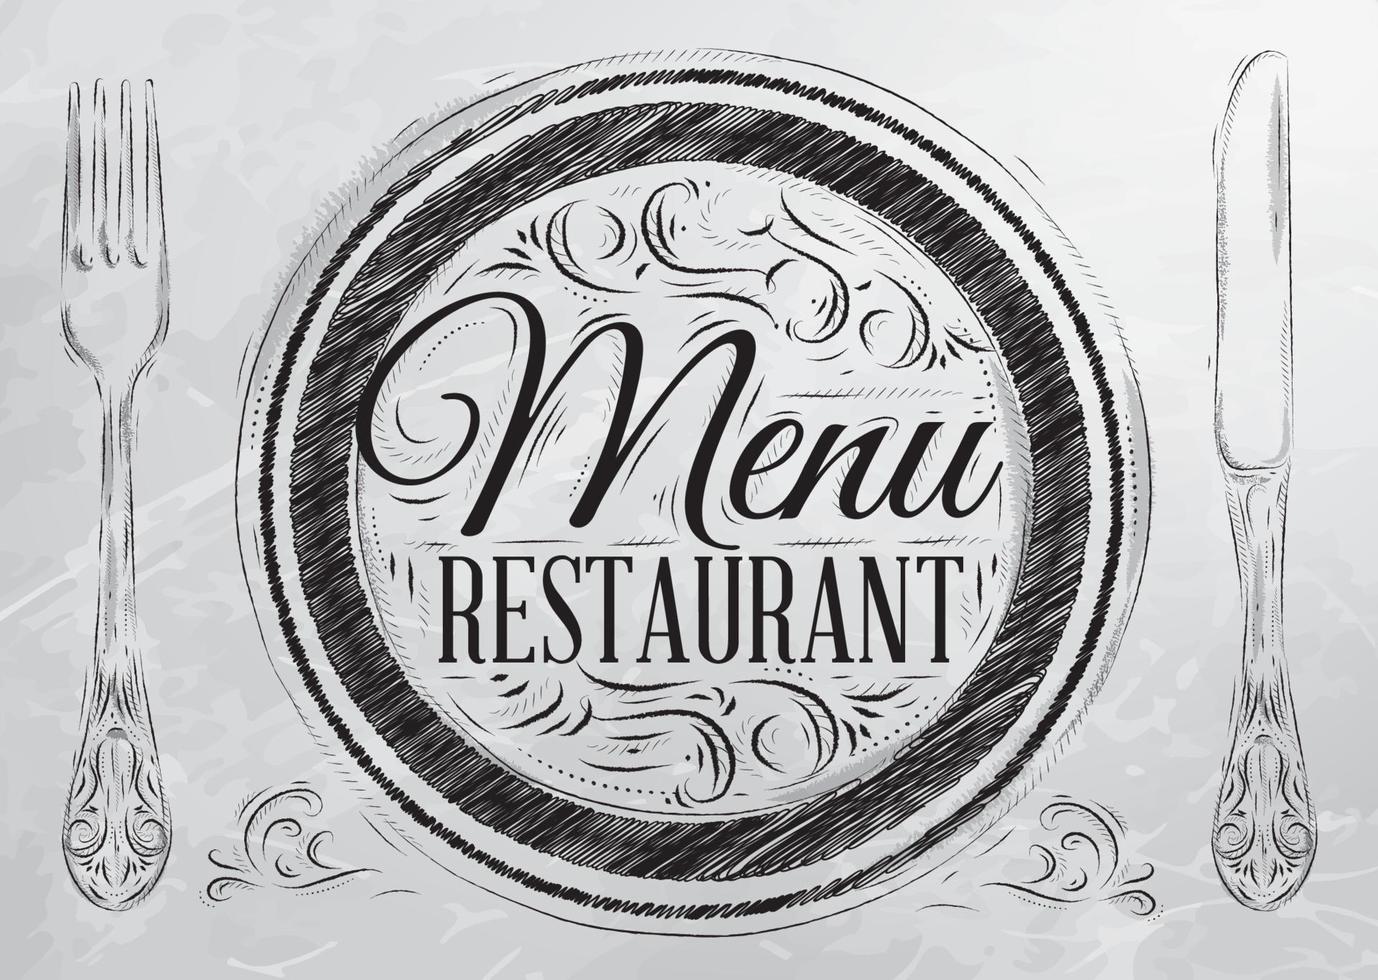 menu restaurant lettrage sur une assiette avec une fourchette et une cuillère sur le côté dans un dessin de style rétro avec du charbon sur le tableau. vecteur